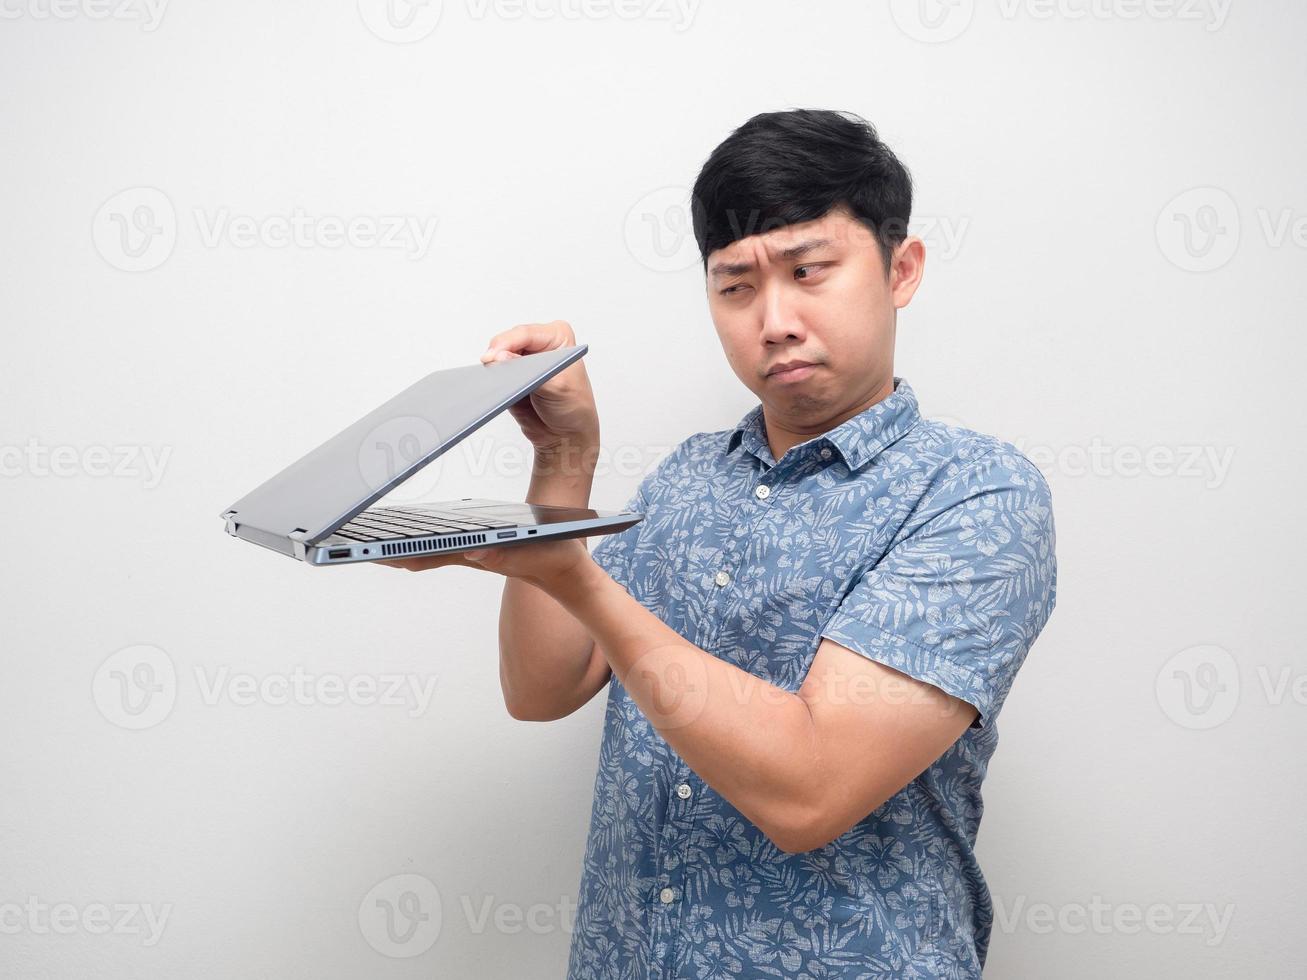 mann blaues hemd halb offener laptop in der hand geste spionage und angst inhalt foto